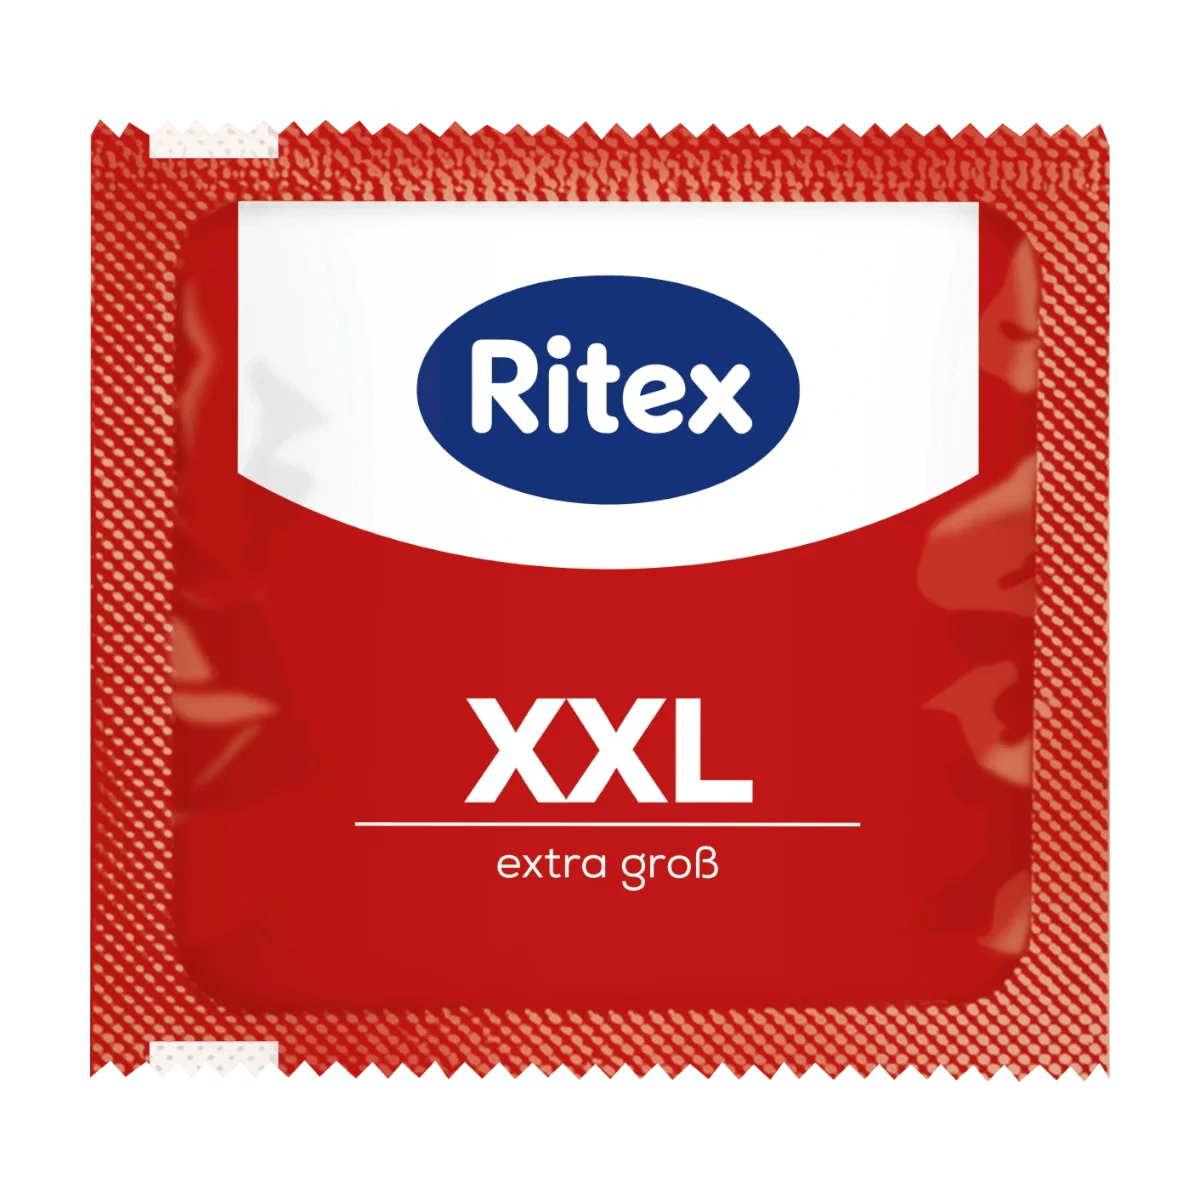 Ritex Kondome XXL , Breite 55mm, 8 Stk